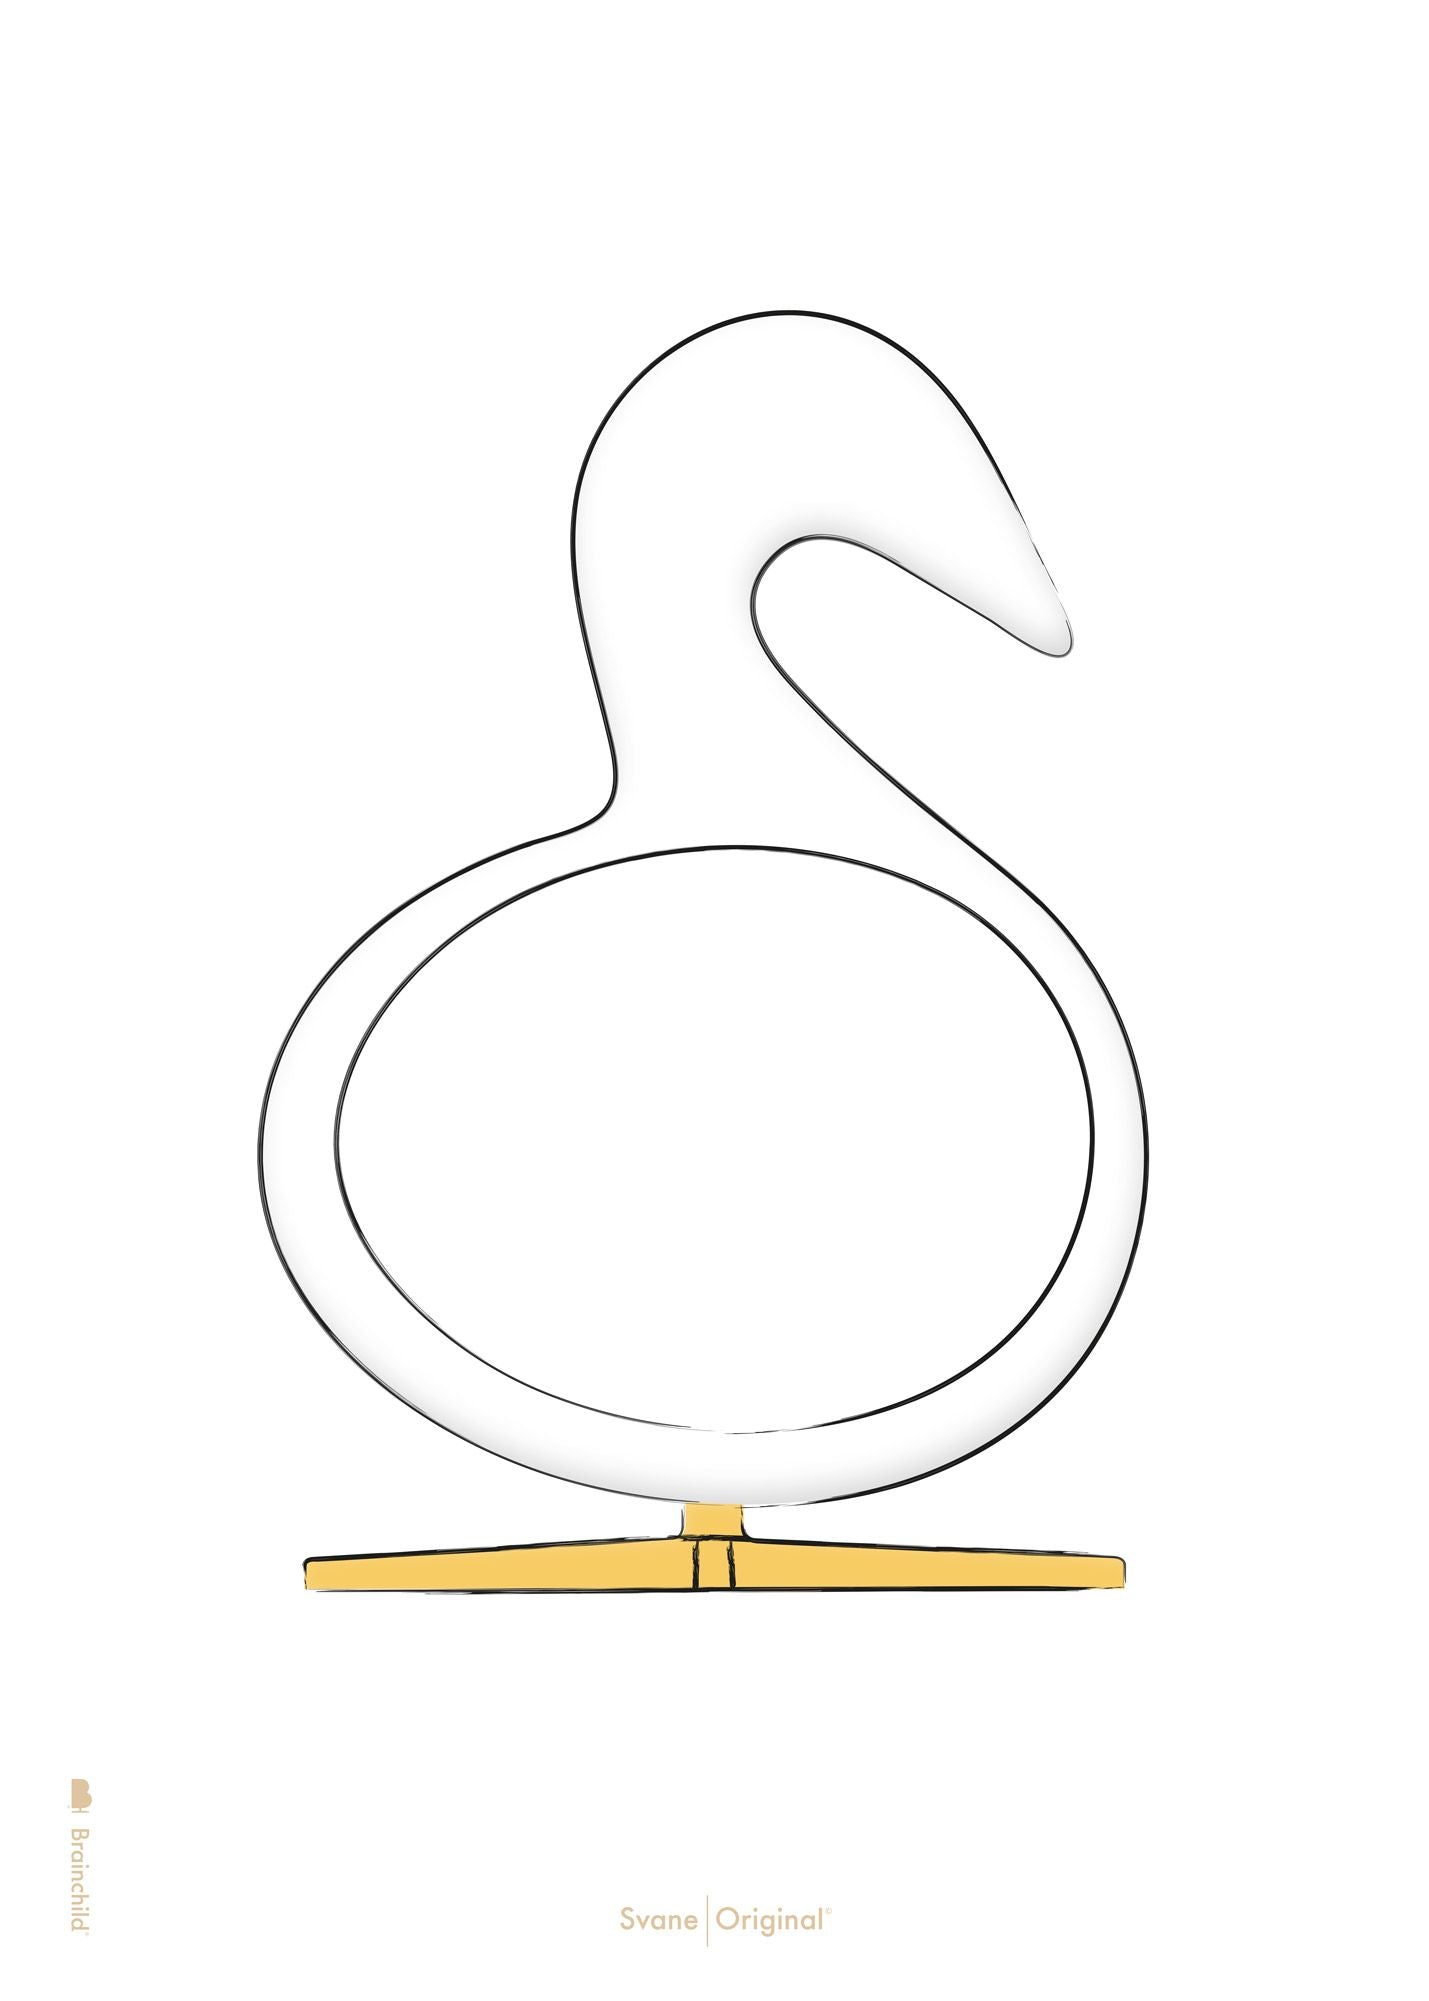 Brainchild Swan Design Sketch Plakat uden ramme 70x100 cm, hvid baggrund